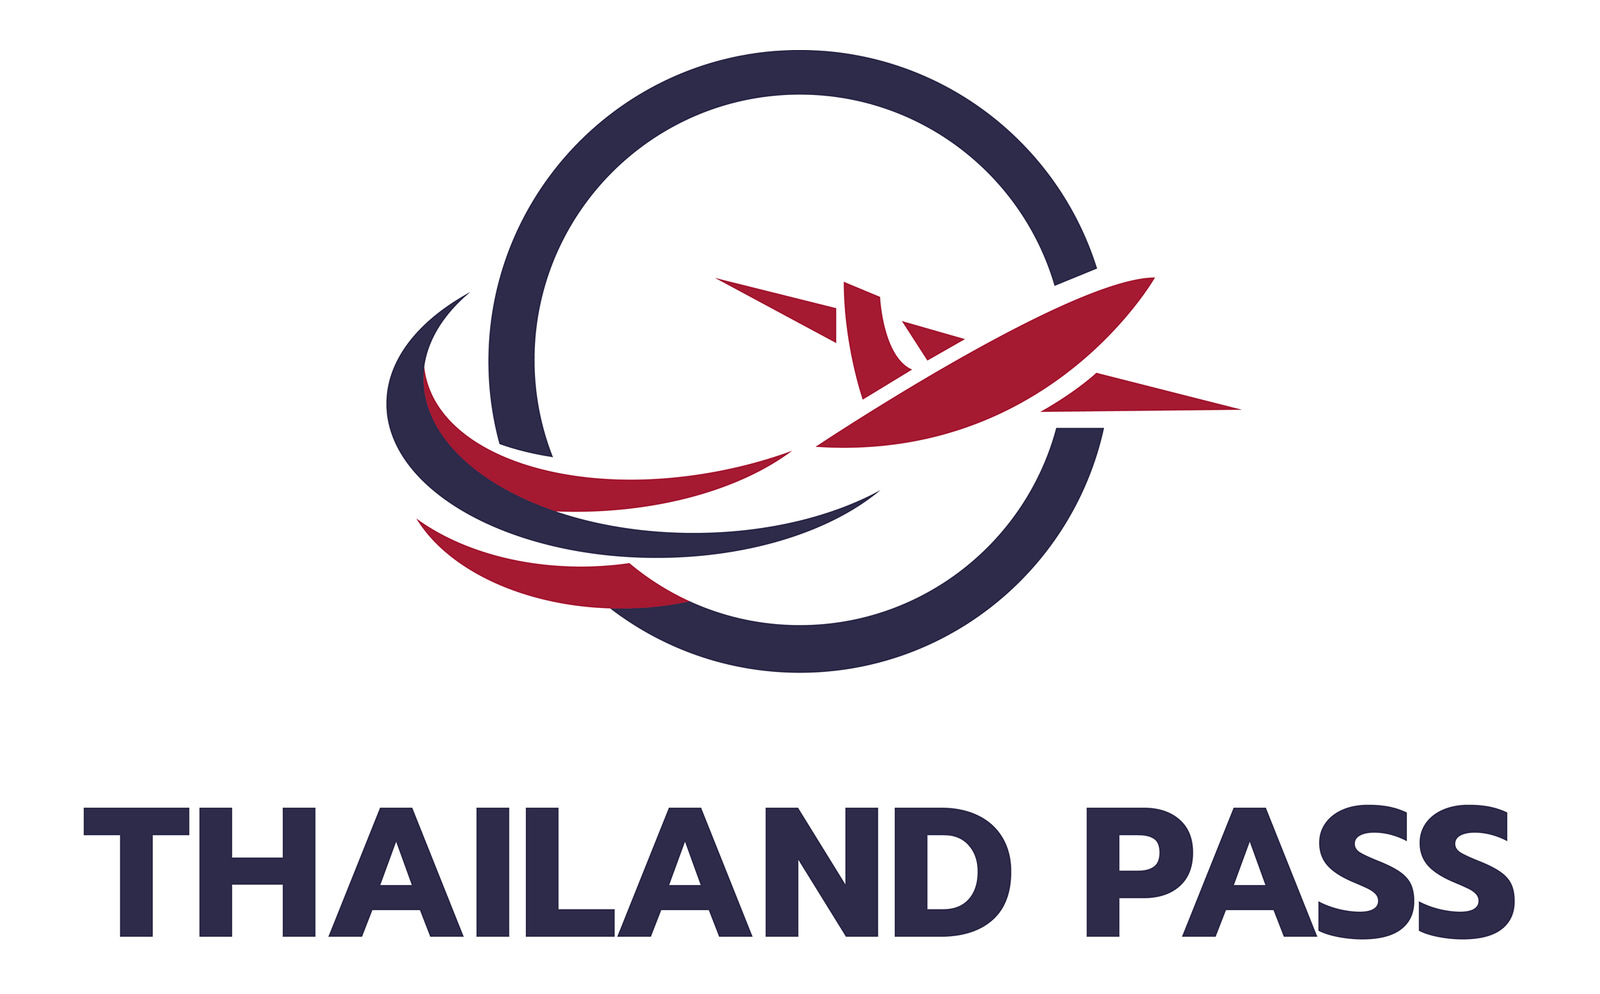 タイ観光大臣、「タイランドパス」廃止の提案をプラユット首相に依頼へ